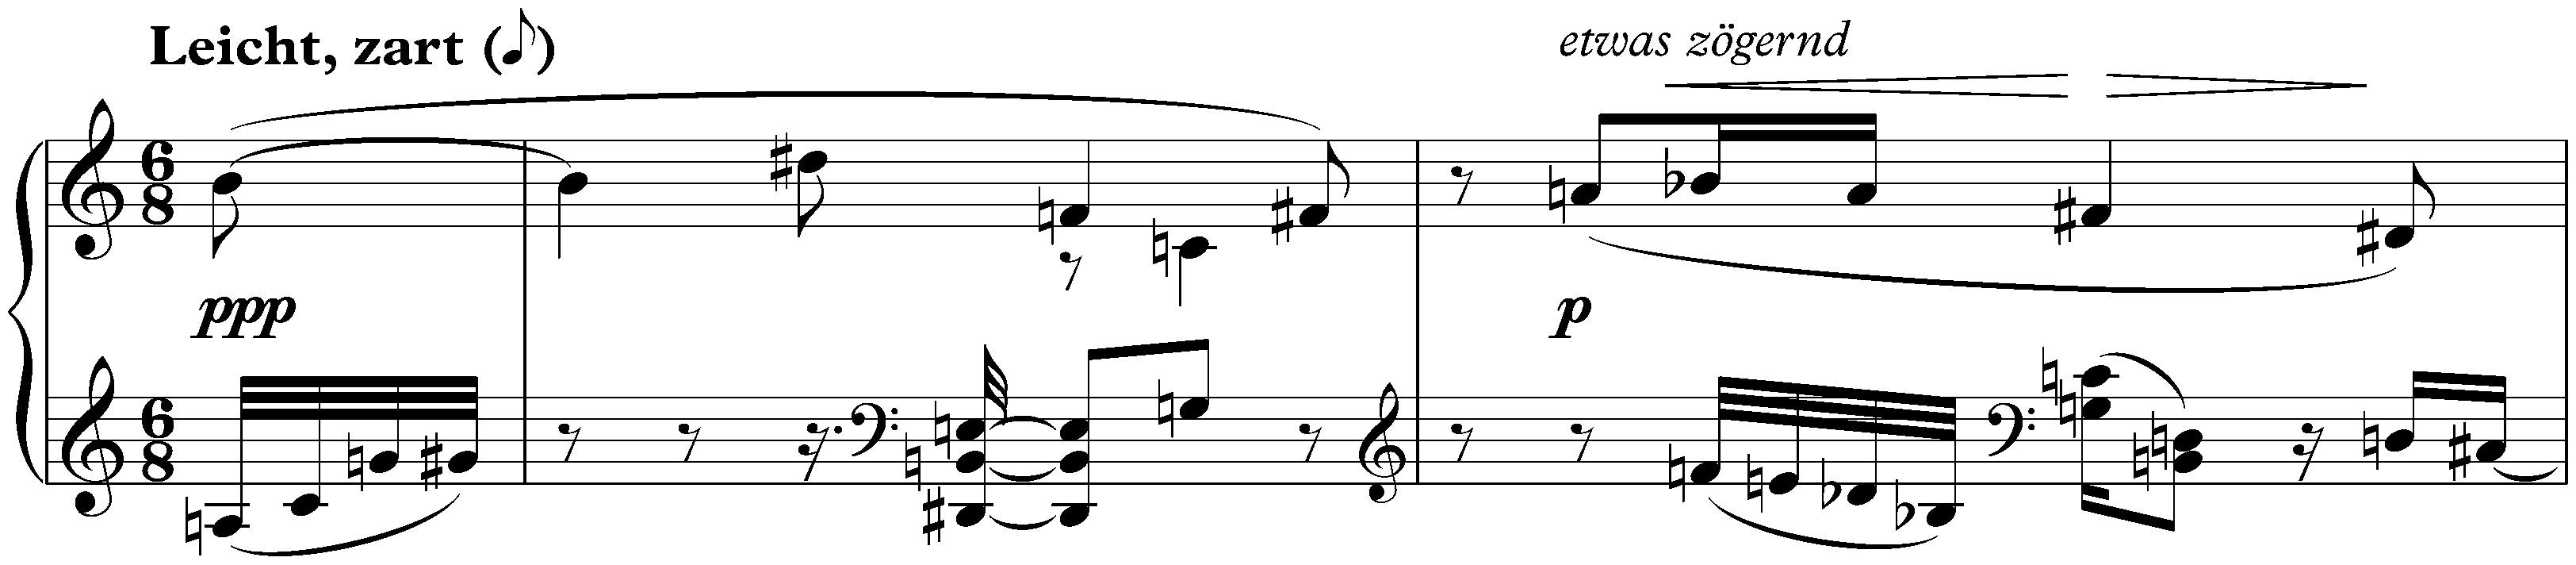 Sechs kleine Klavierstücke, op. 19; 1. Leicht, zart